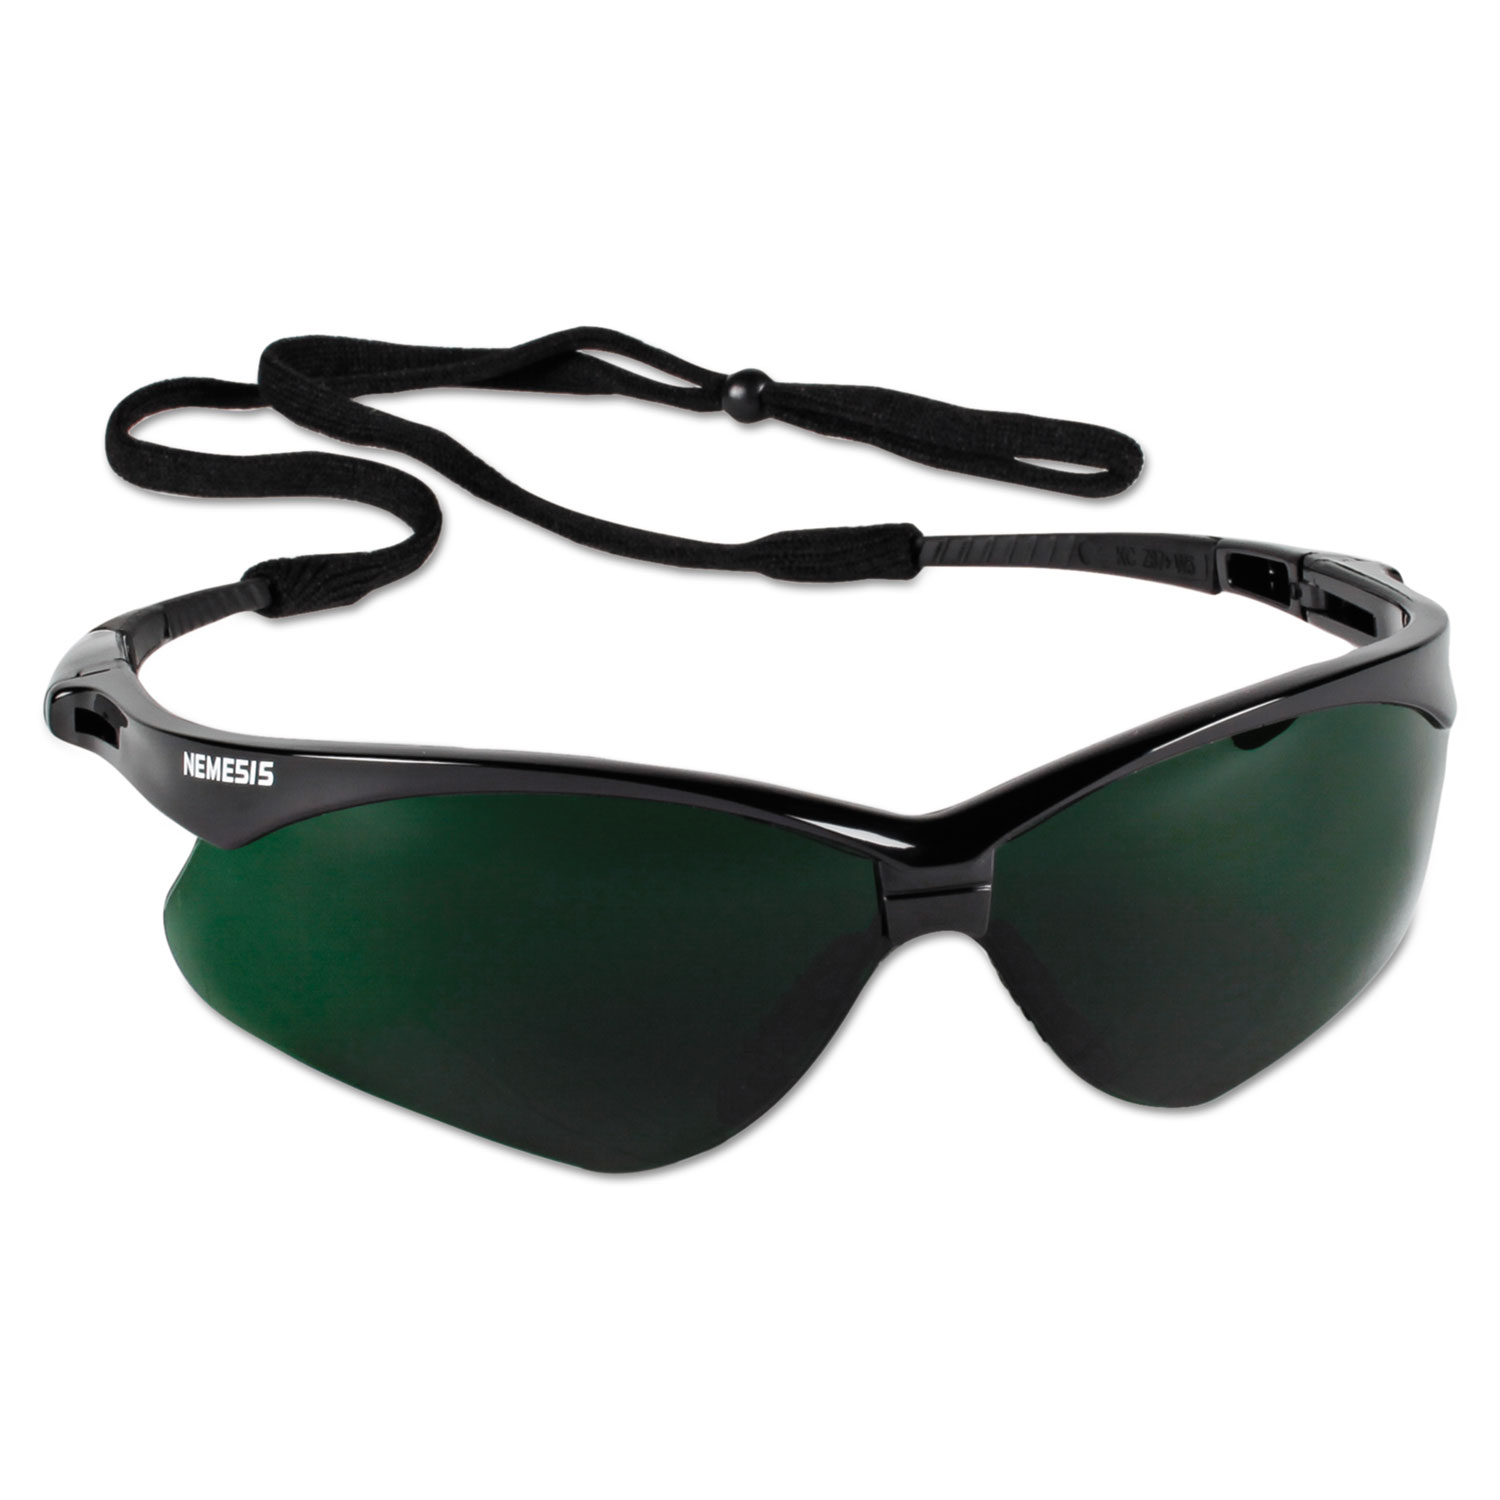 V30 Nemesis Safety Eyewear, Black Frame/IRUV 5 Lens, Nylon/Polycarb